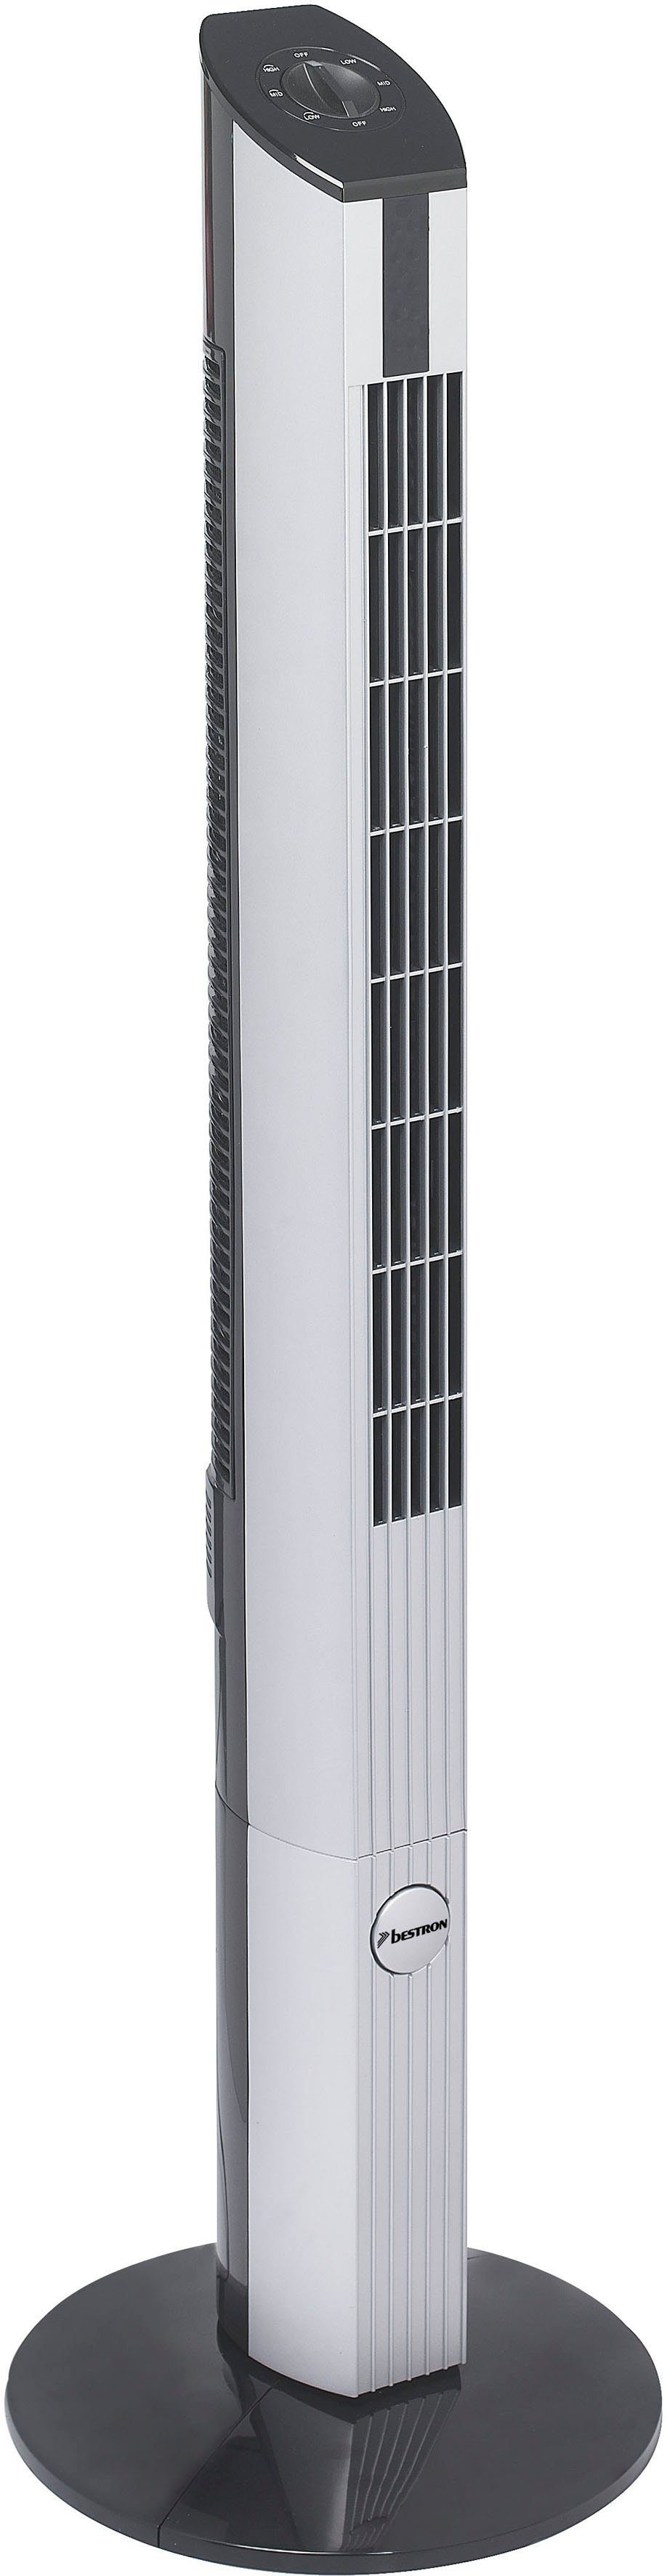 bestron torenventilator dft430 met draaifunctie, hoogte: 107 cm, 50 w, zwart-grijs zilver